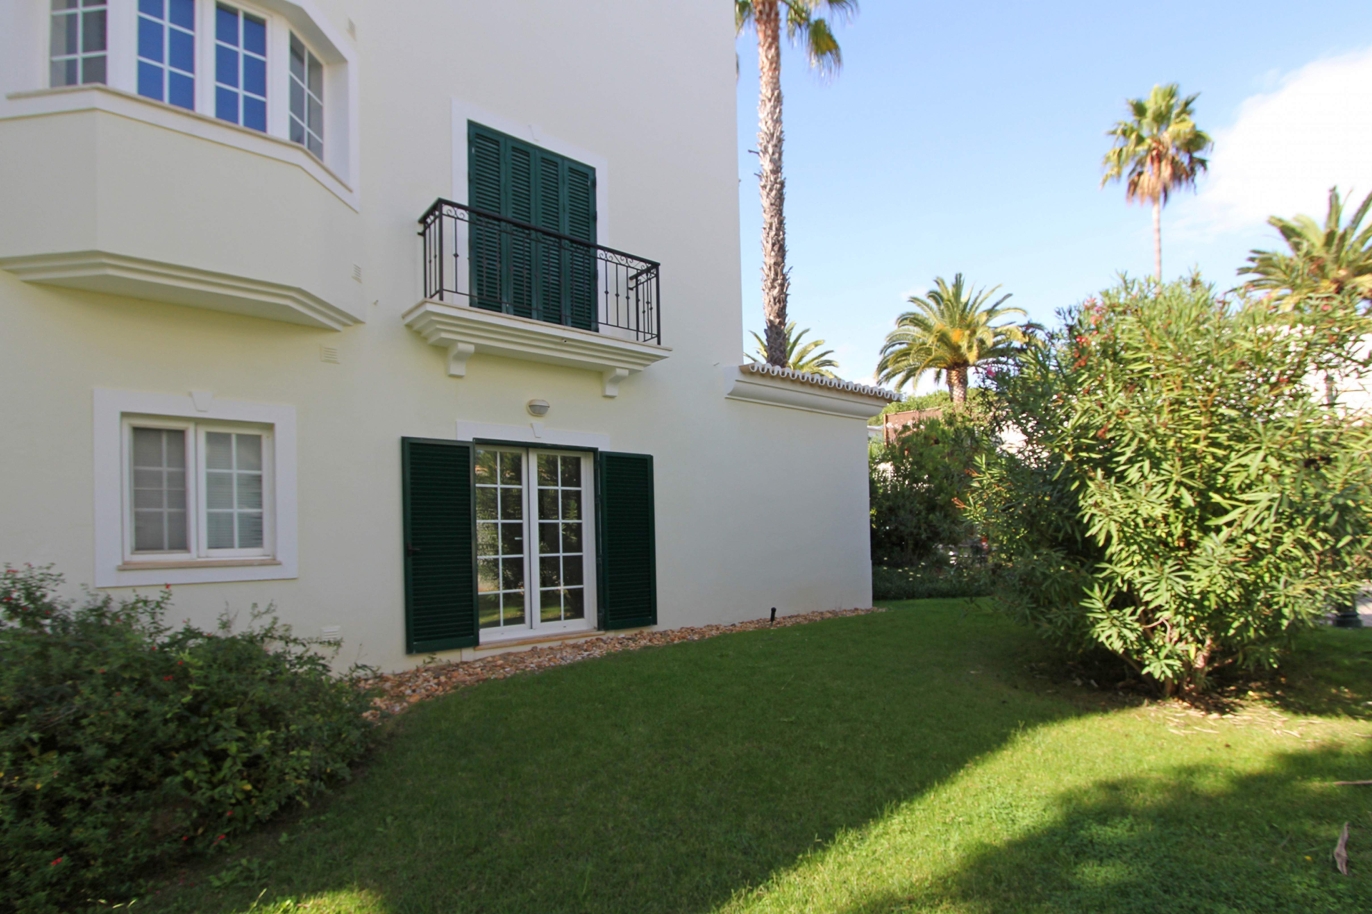 Apartamento en venta, cerca de playa, Vale do Lobo, Algarve, Portugal_120368